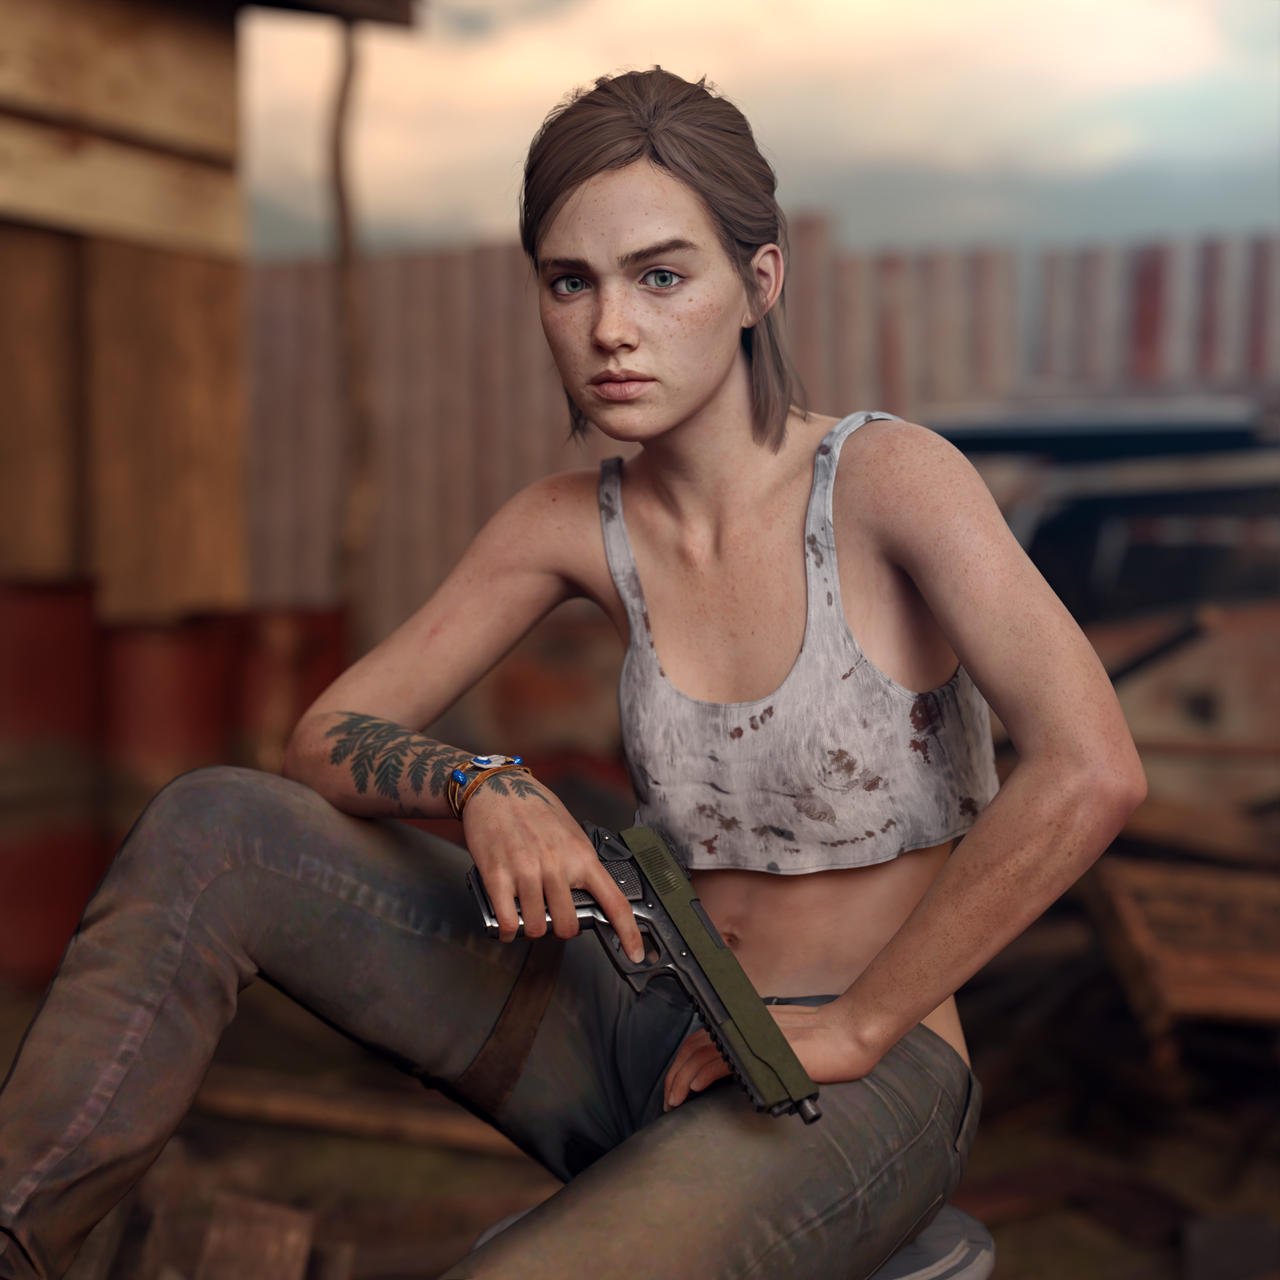 Ellie The Last Of Us 2 #2 by calsicarbonne on DeviantArt